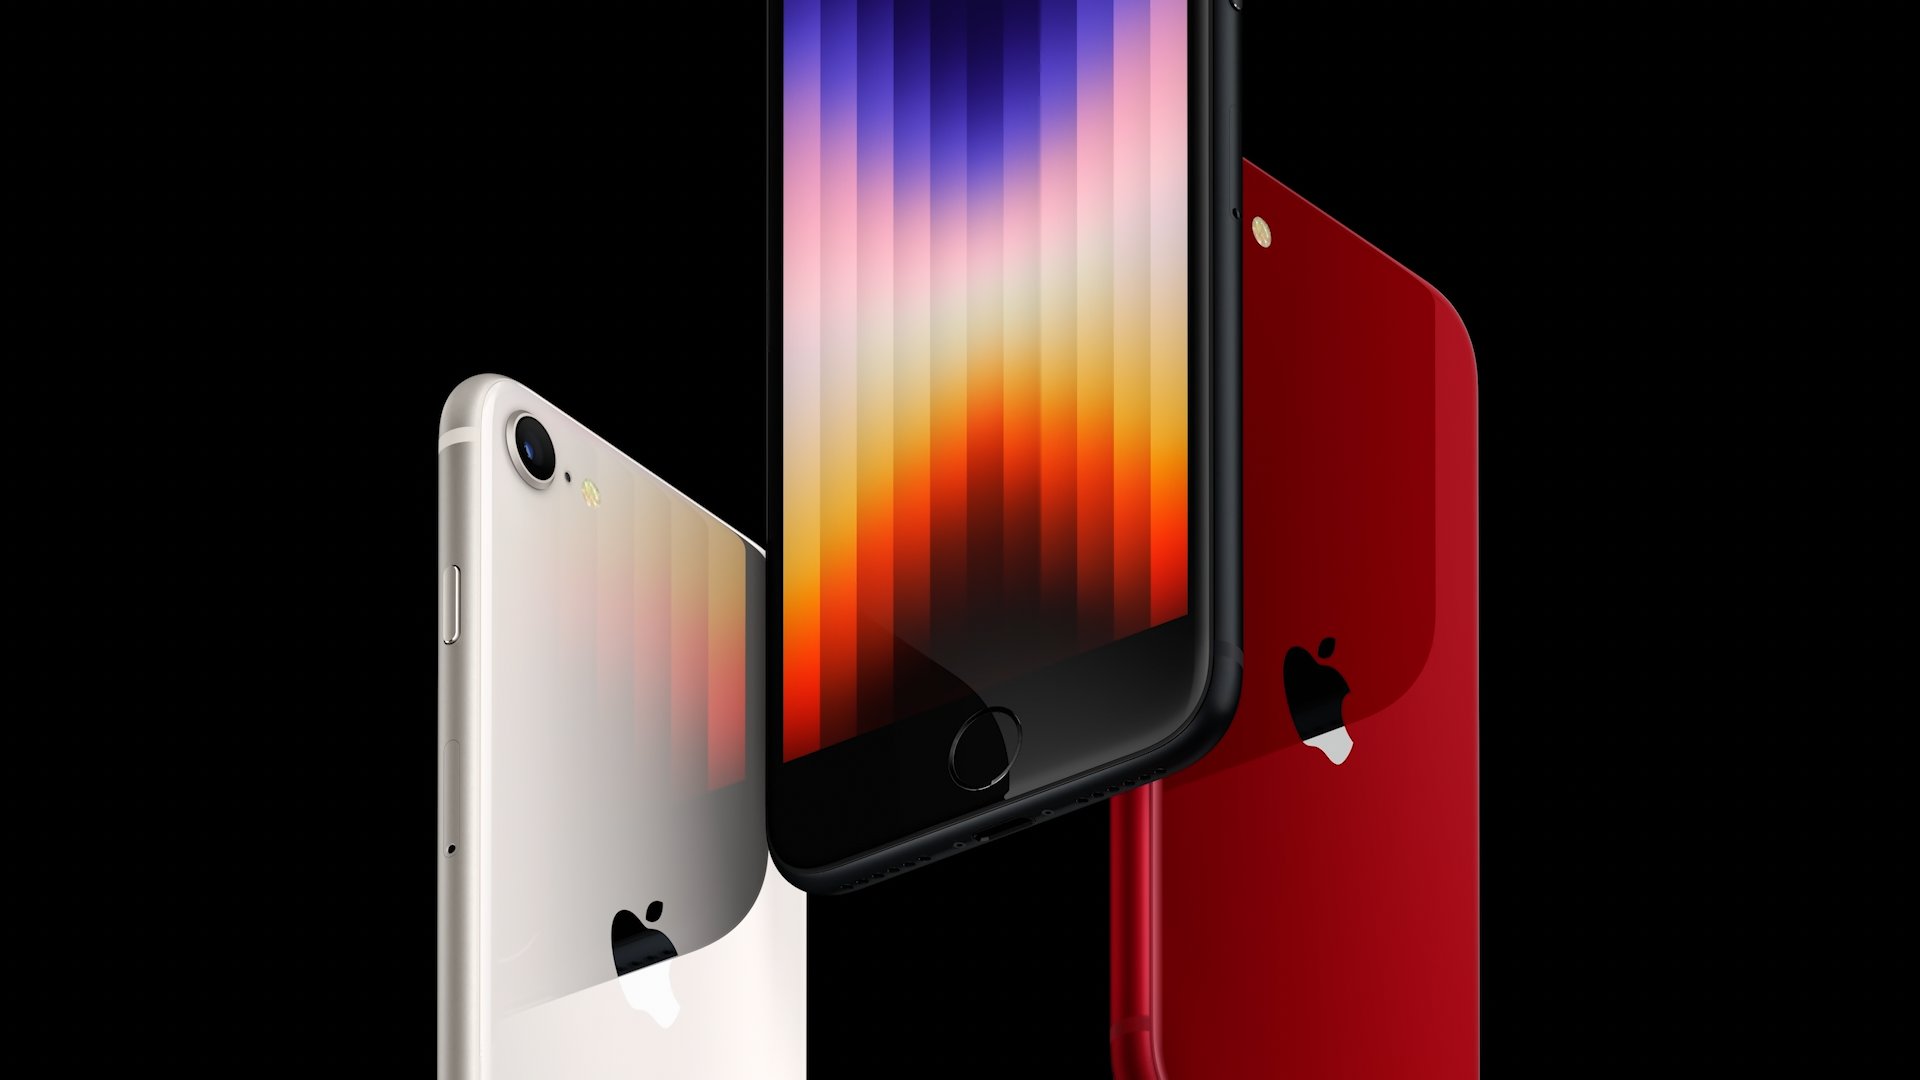 El iPhone SE Plus será el nuevo móvil barato de Apple